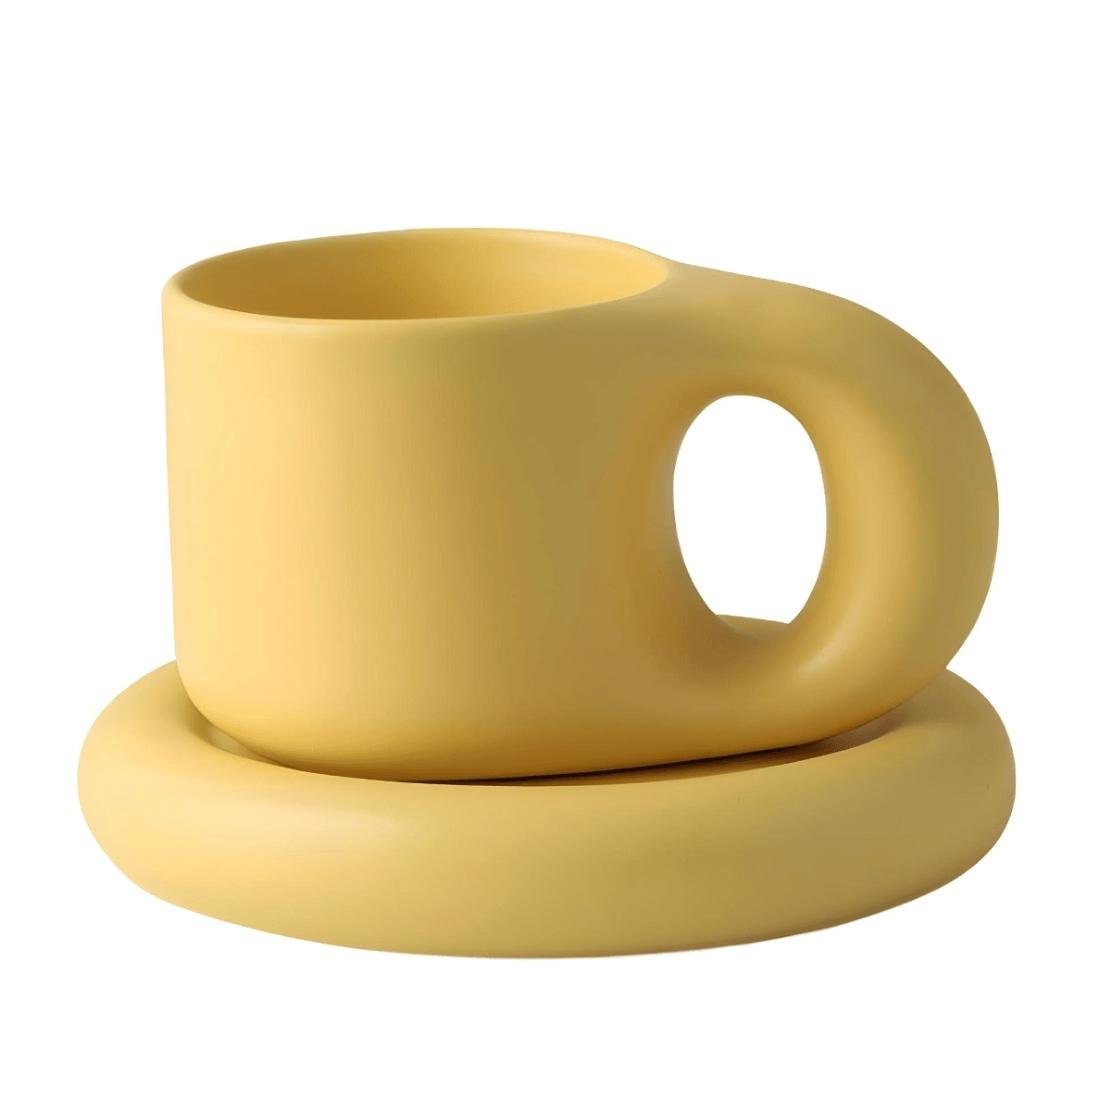 Yellow chunky ceramic mug and saucer